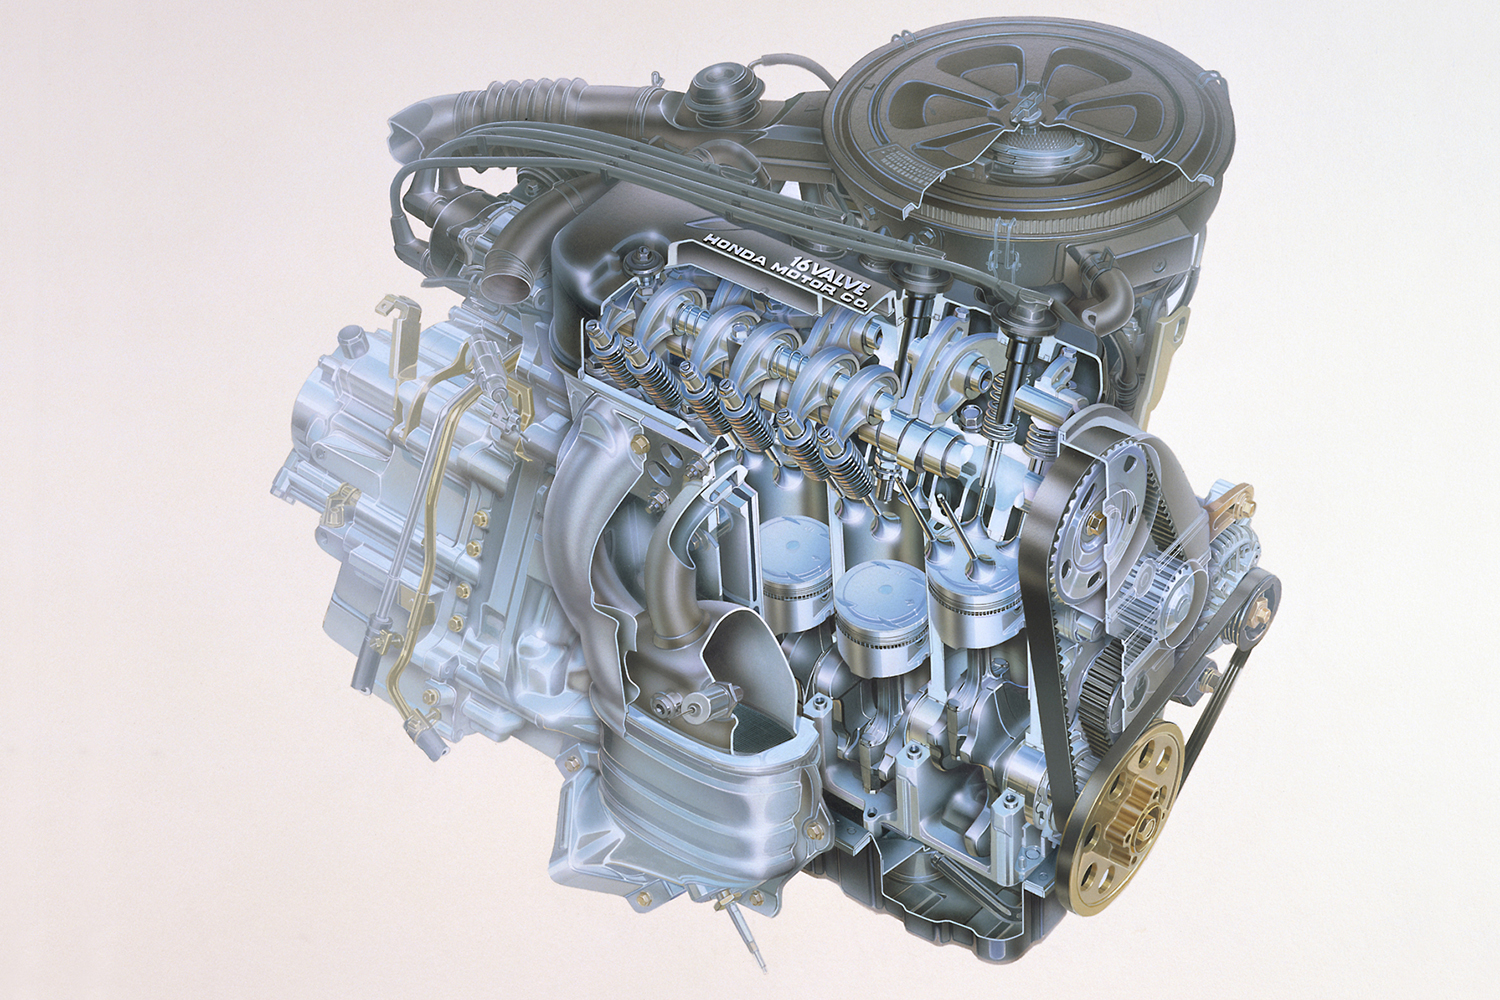 SOHCエンジンの内部構造